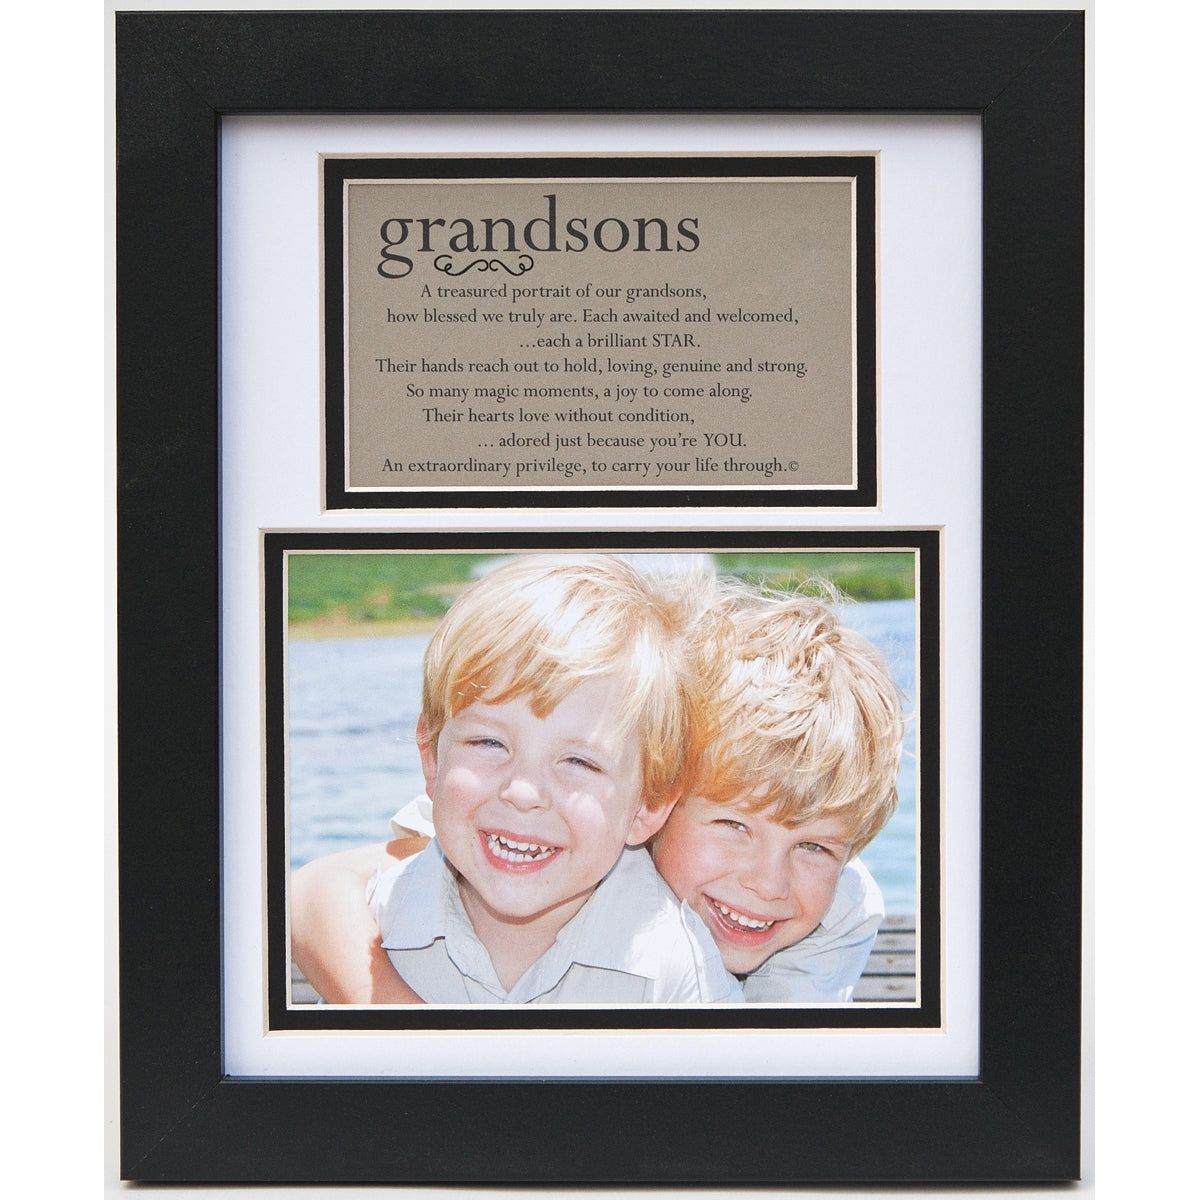 Grandson Frame 8x10